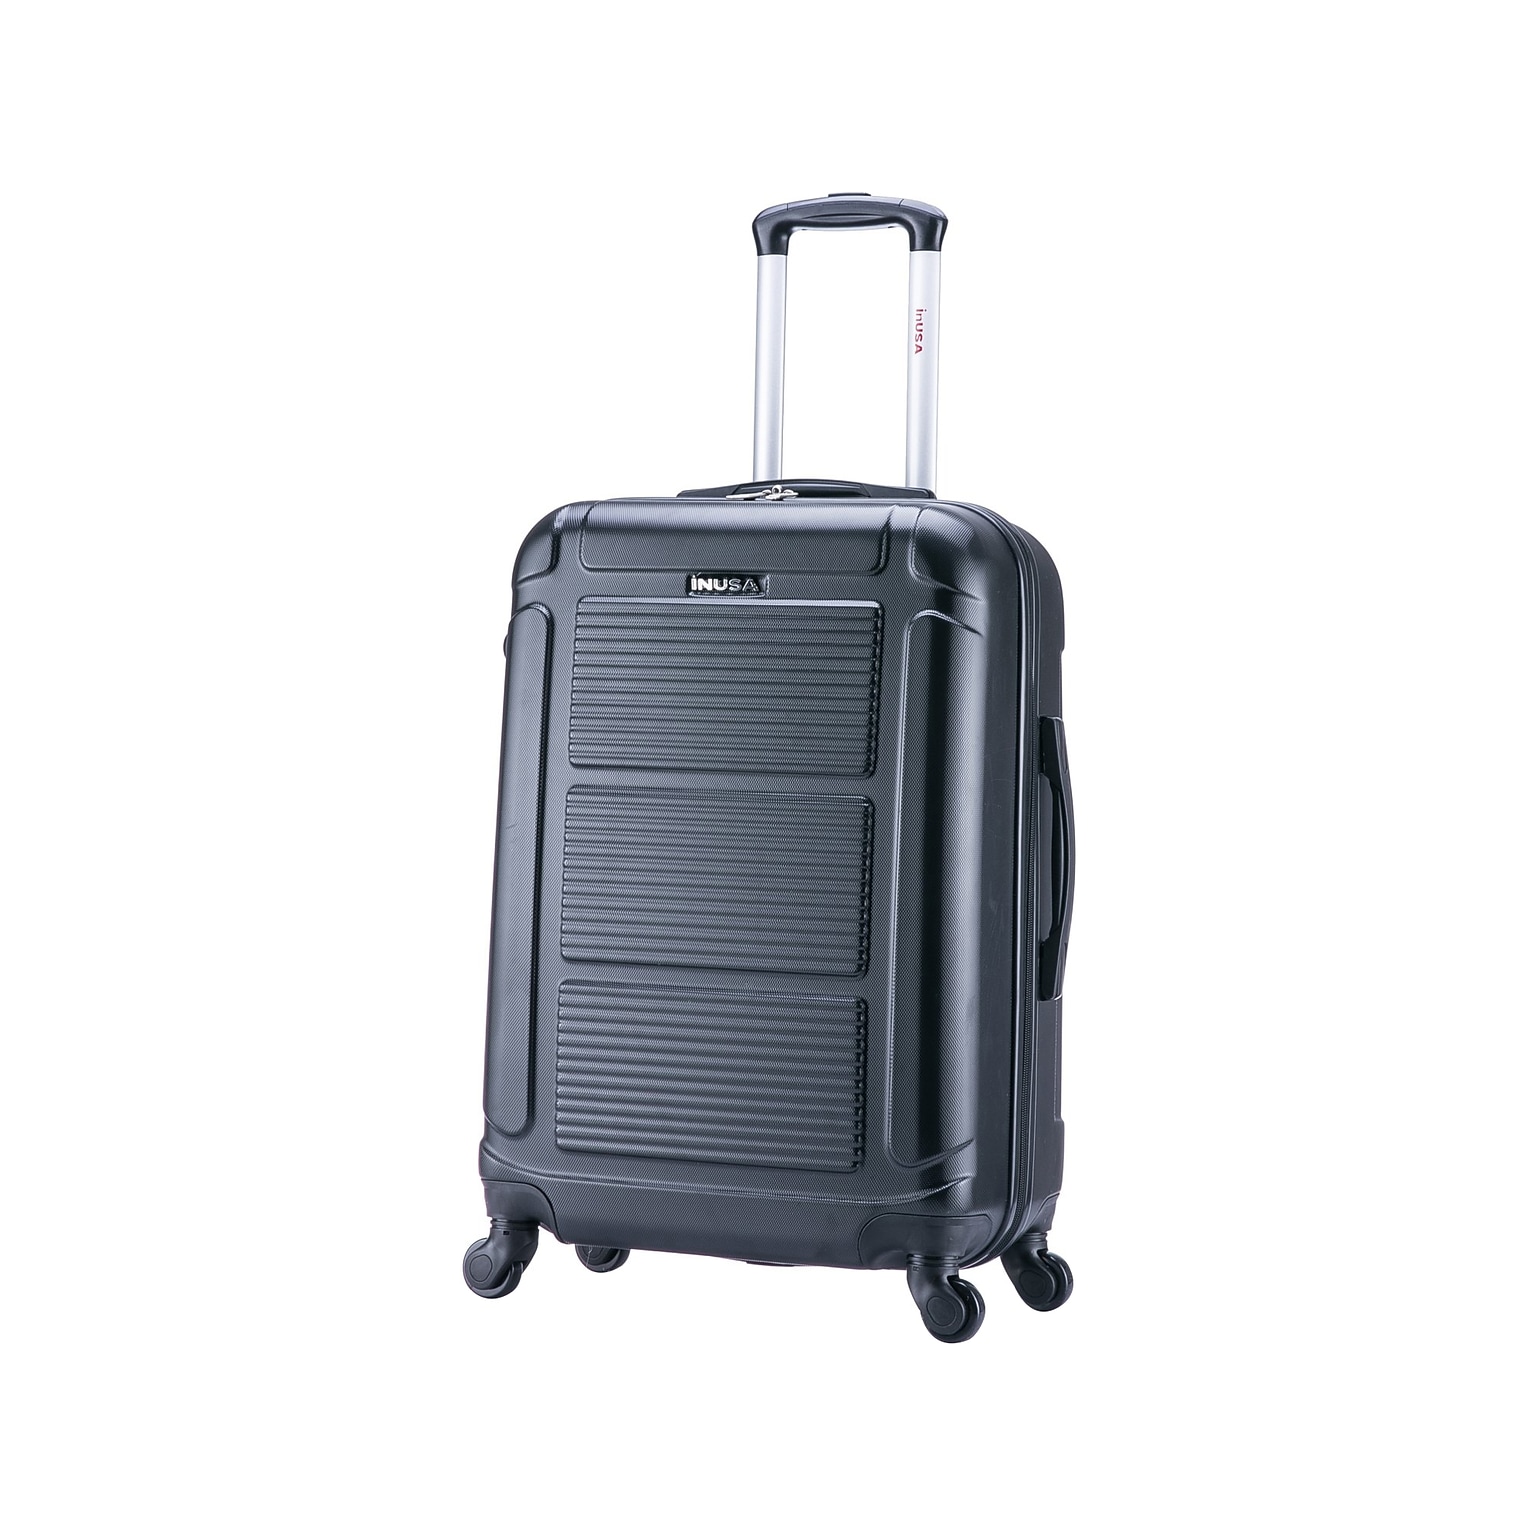 InUSA Pilot 26 Hardside Suitcase, 4-Wheeled Spinner, Black (IUPIL00M-COA)